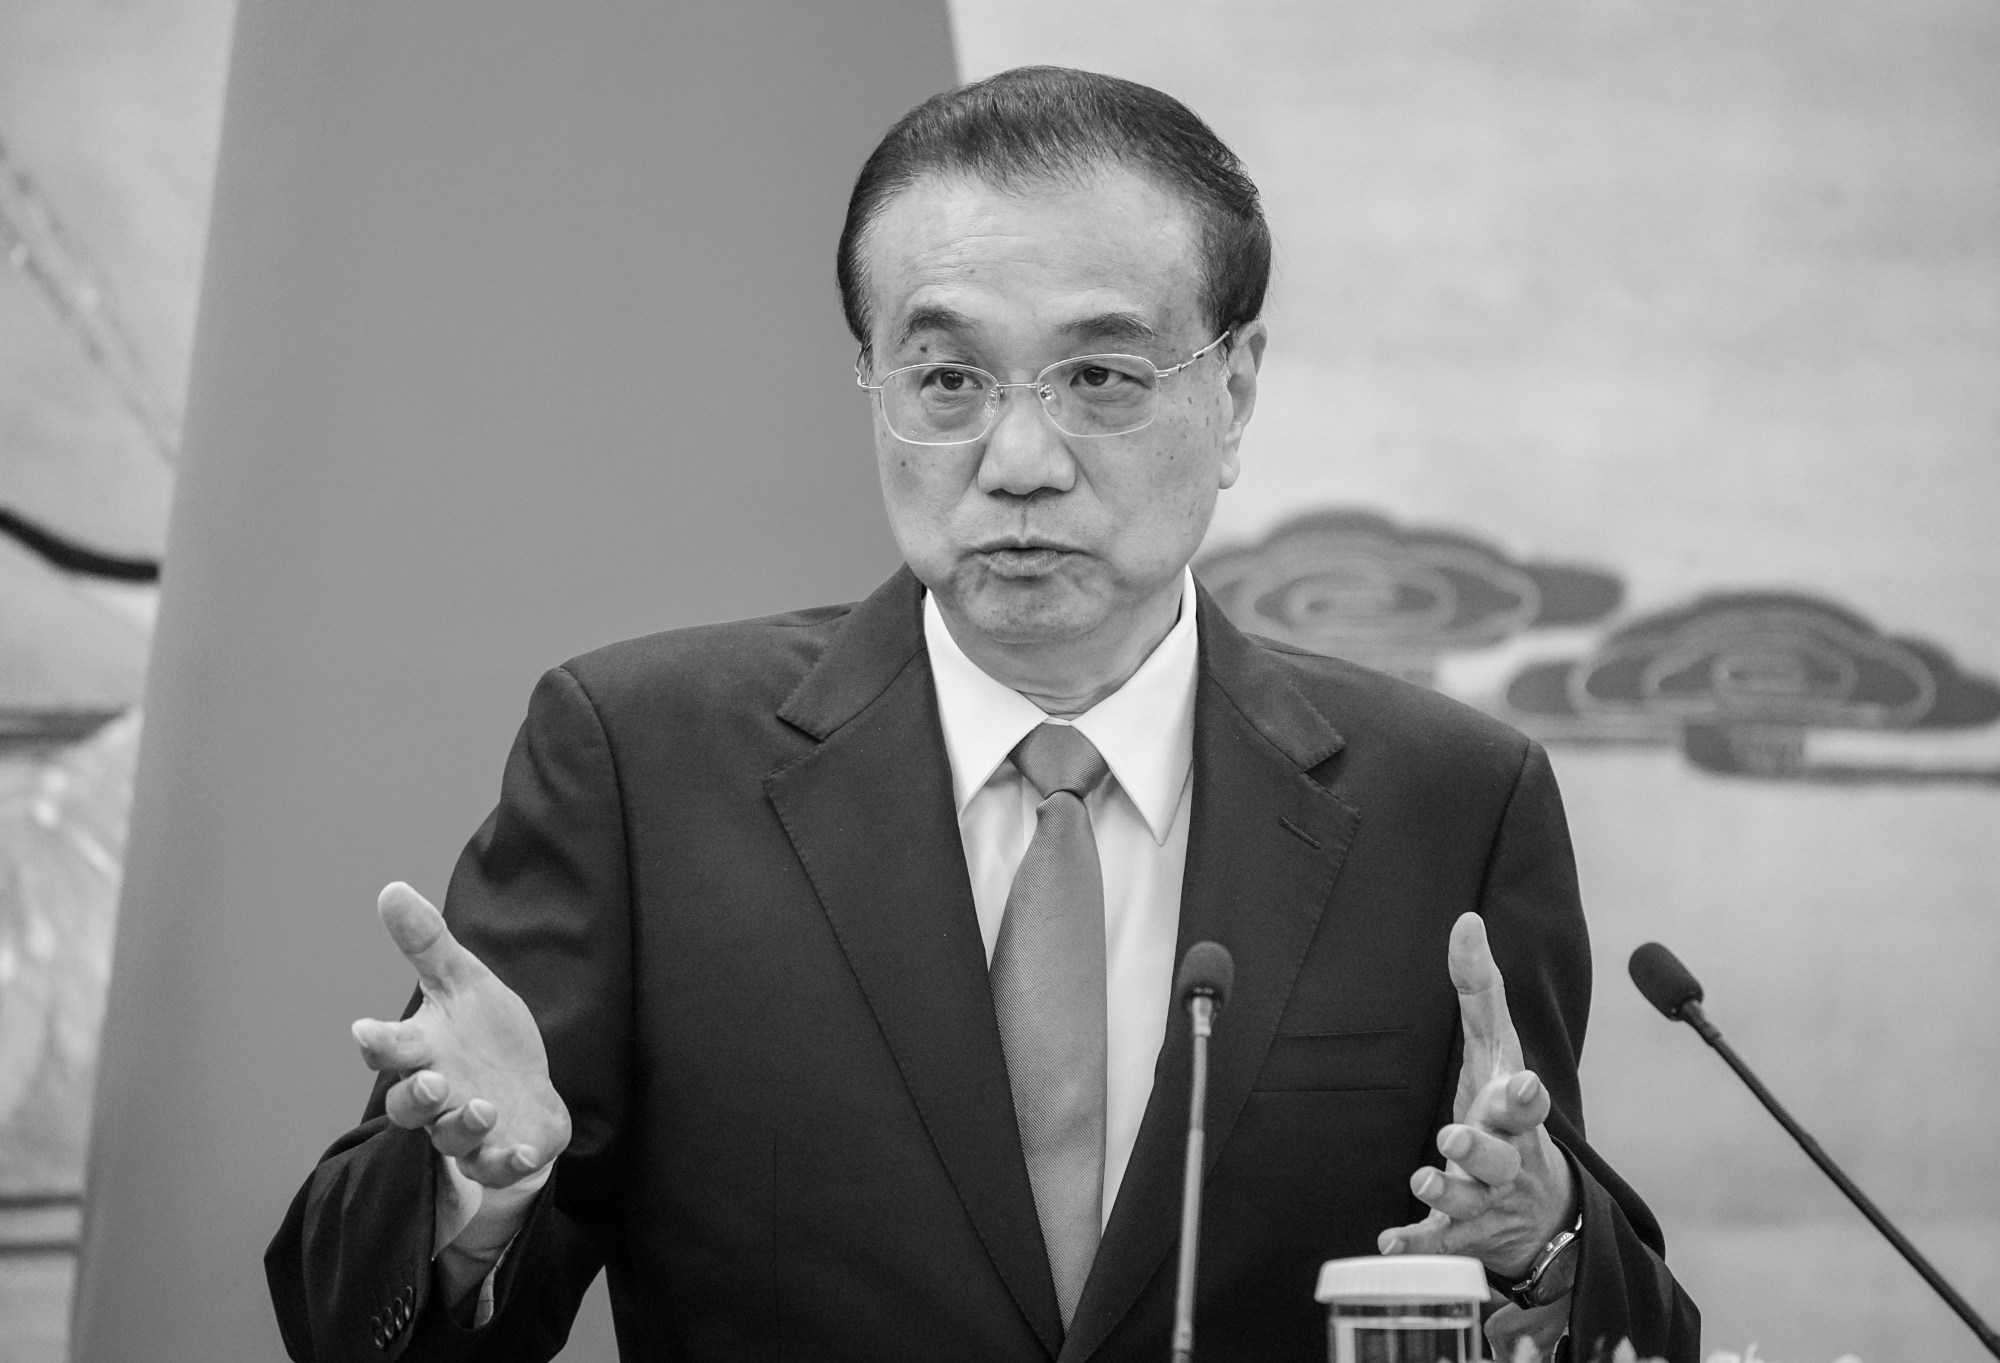 El presidente Xi Jinping y los dirigentes chinos rinden un homenaje final al ex primer ministro Li Keqiang